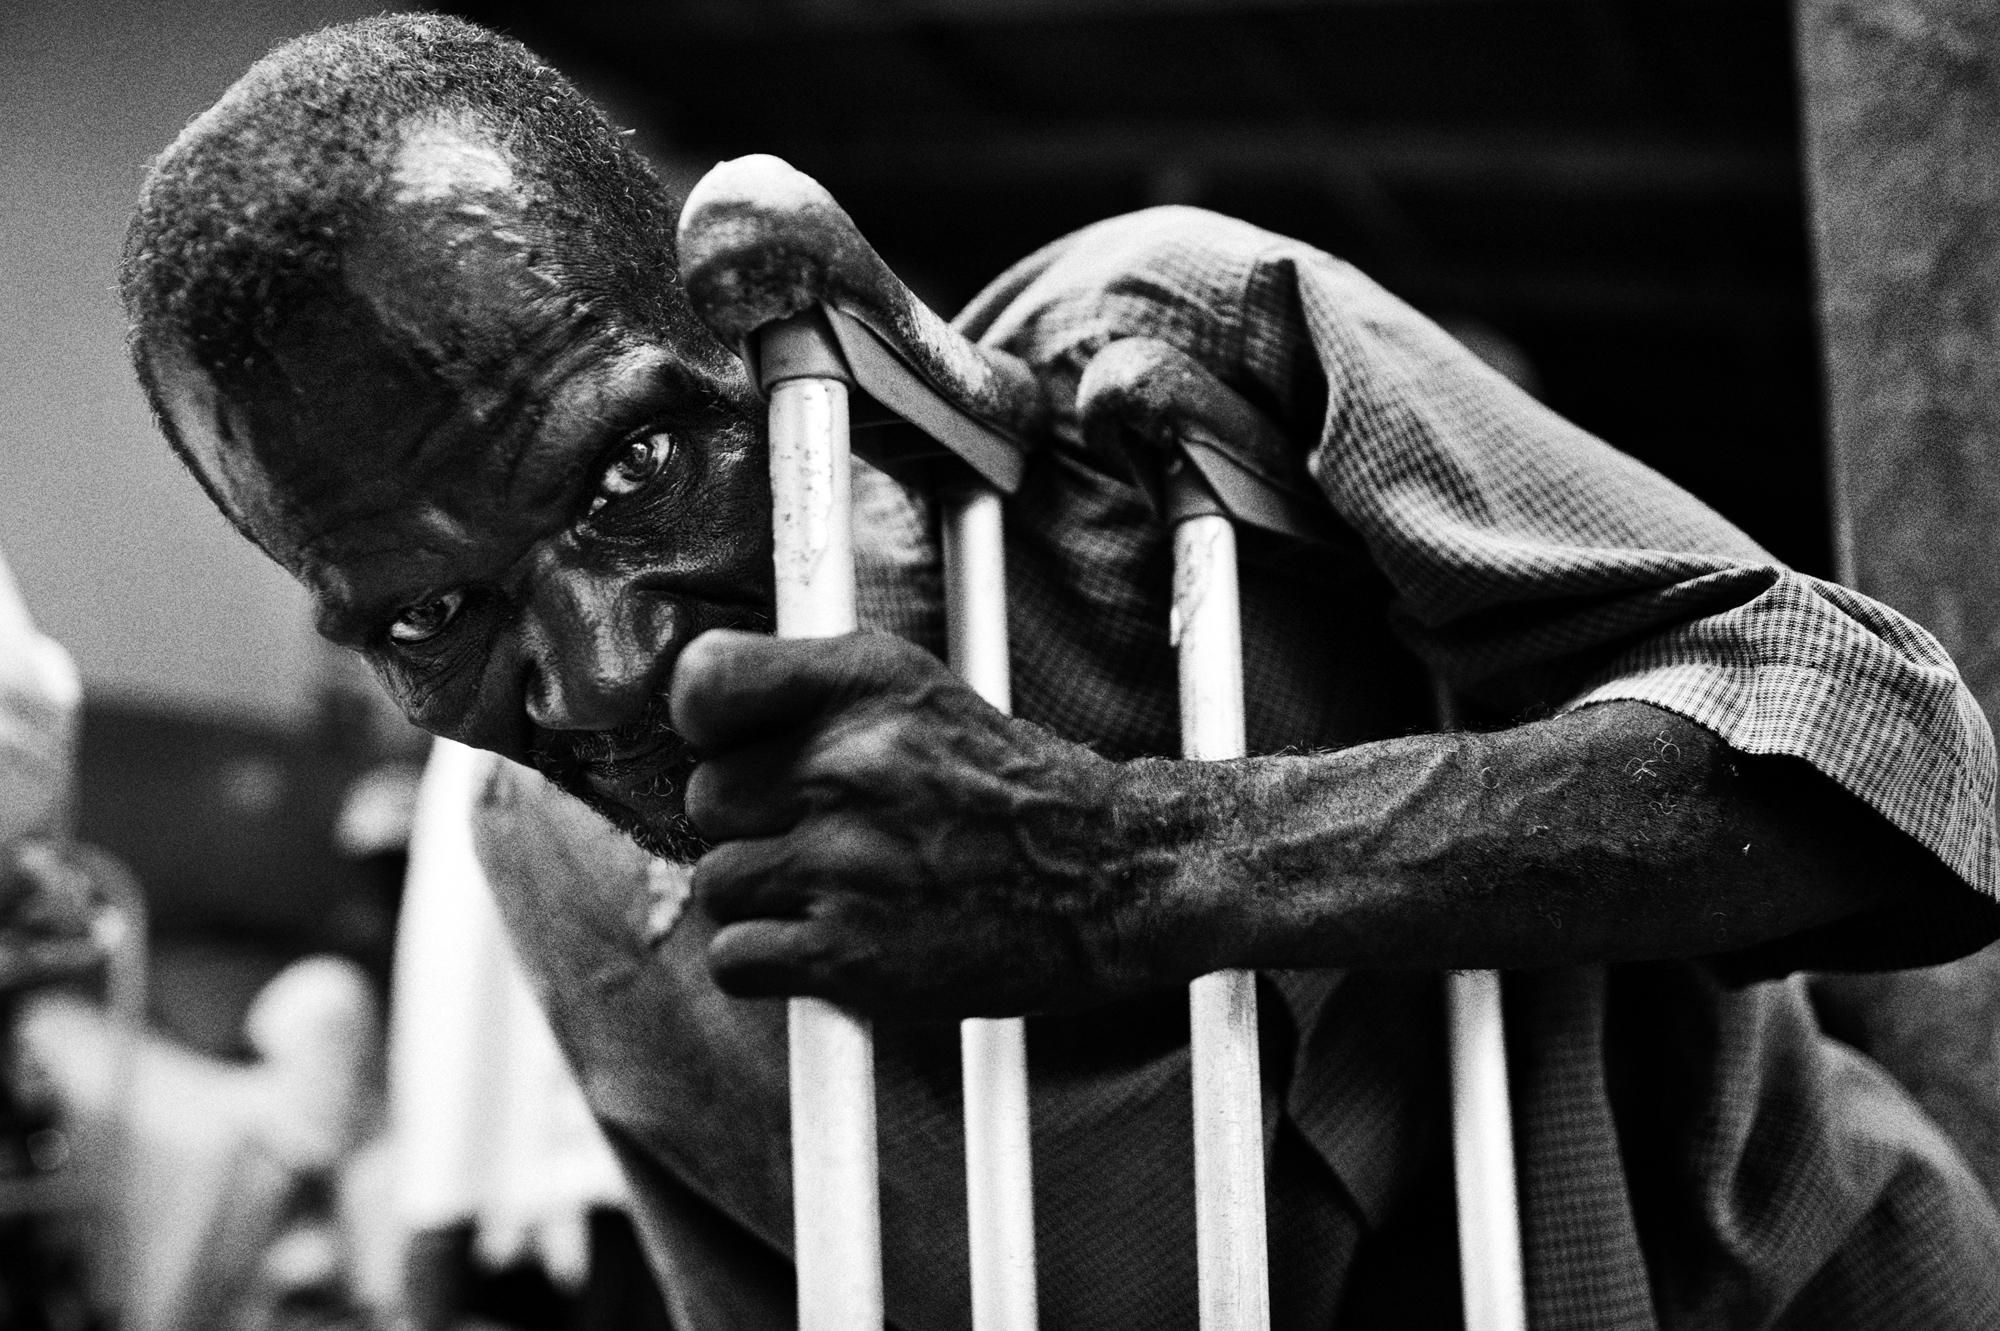 Hospice/ Haiti - Petit Guave, Haiti.
June 2010.
Portrait of an inmate at...